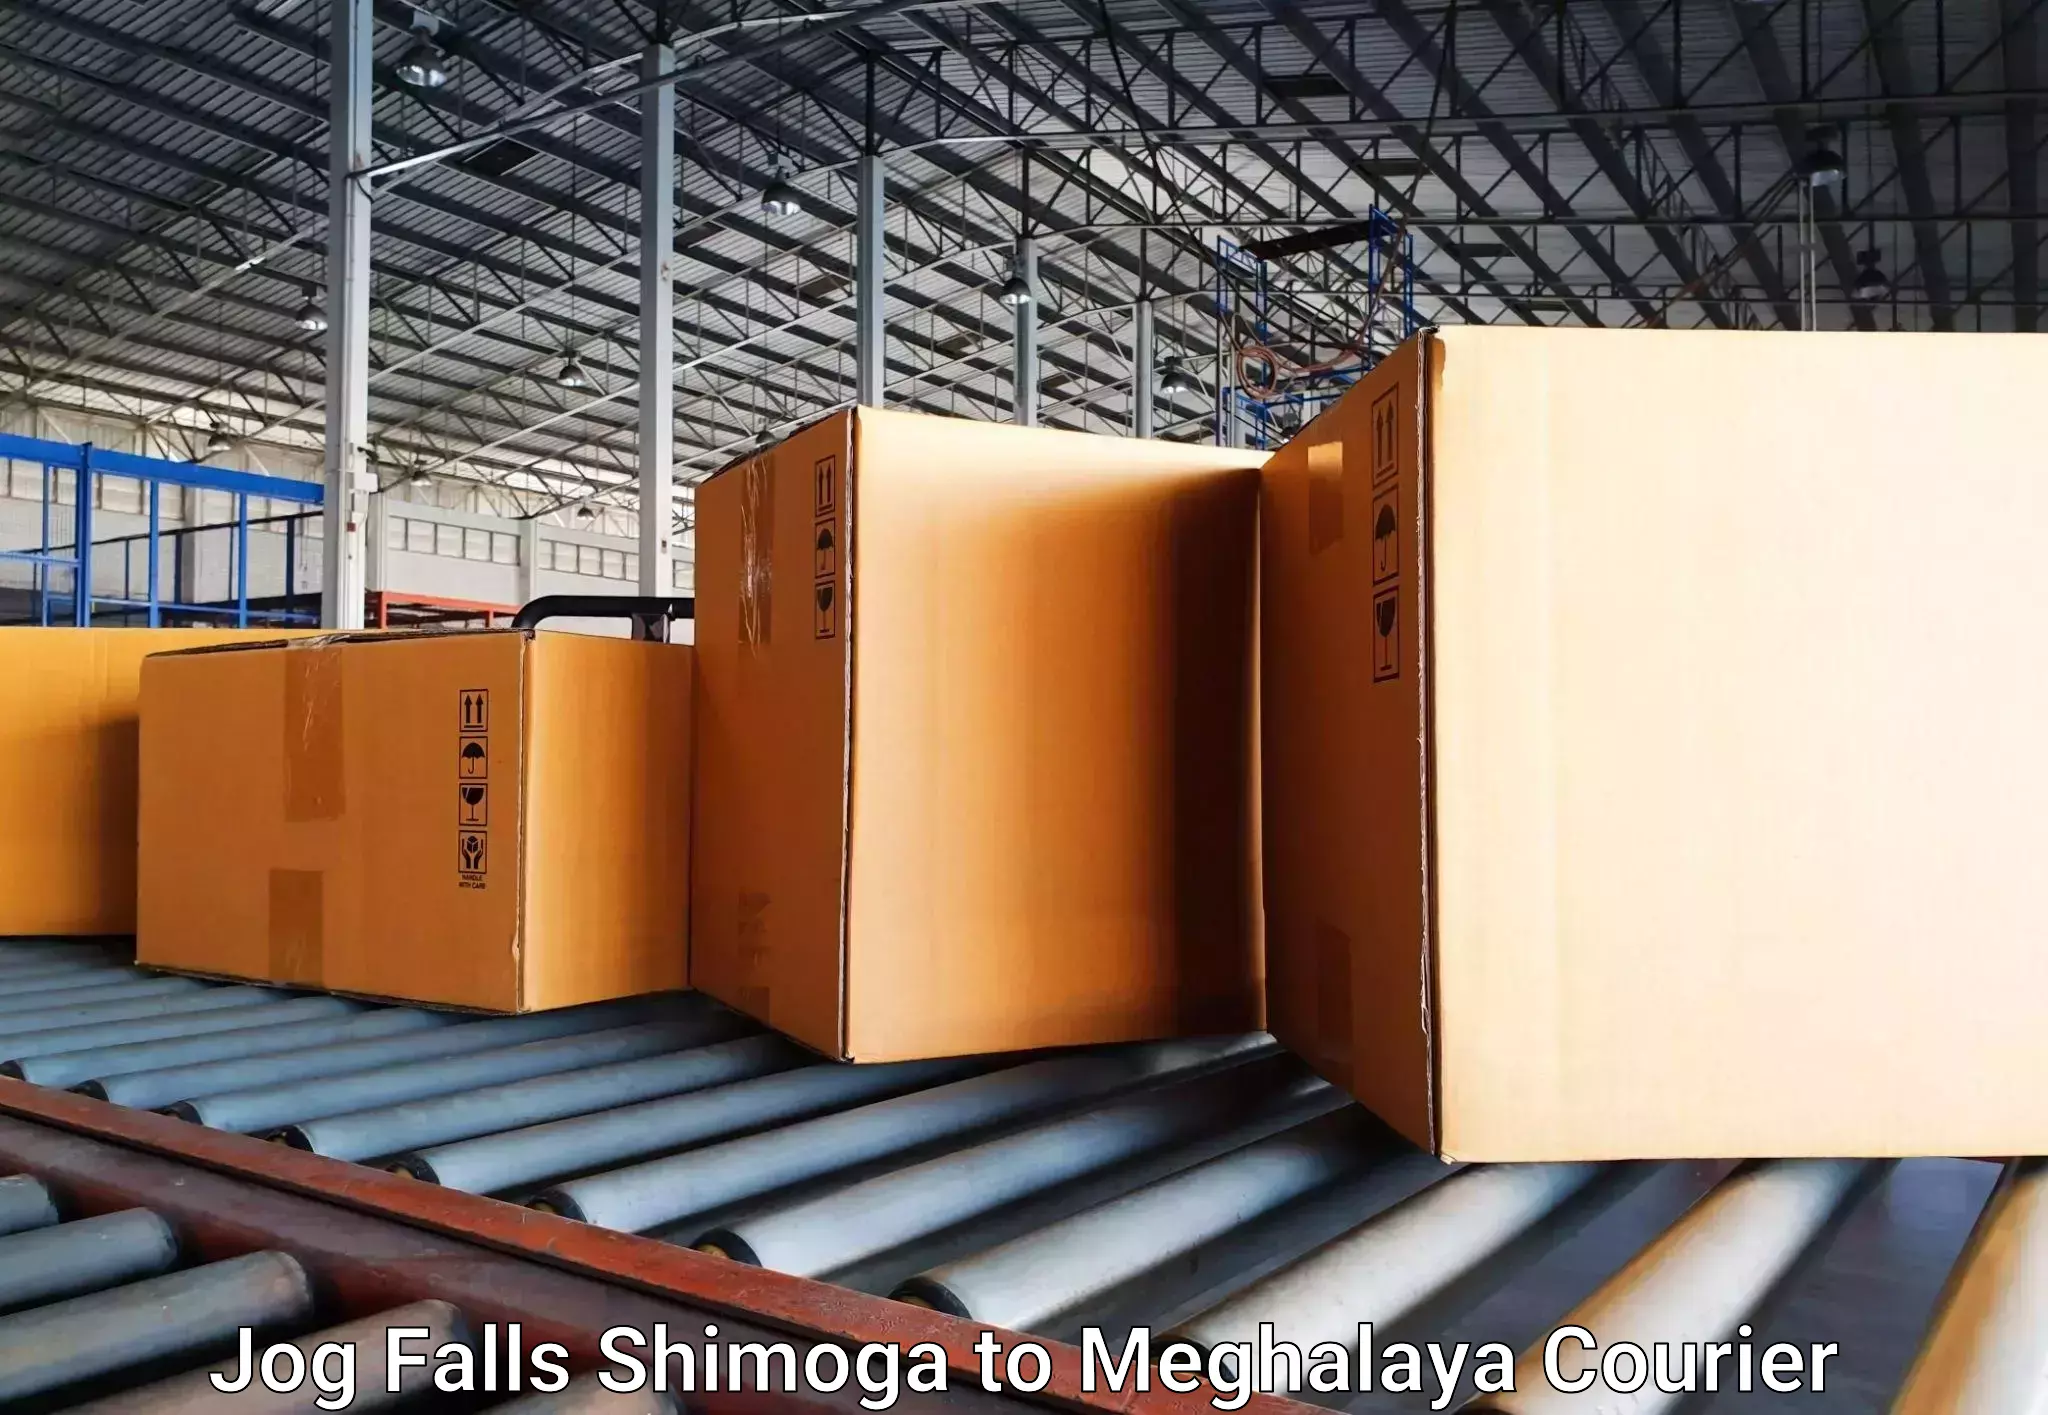 Baggage transport scheduler Jog Falls Shimoga to Nongpoh